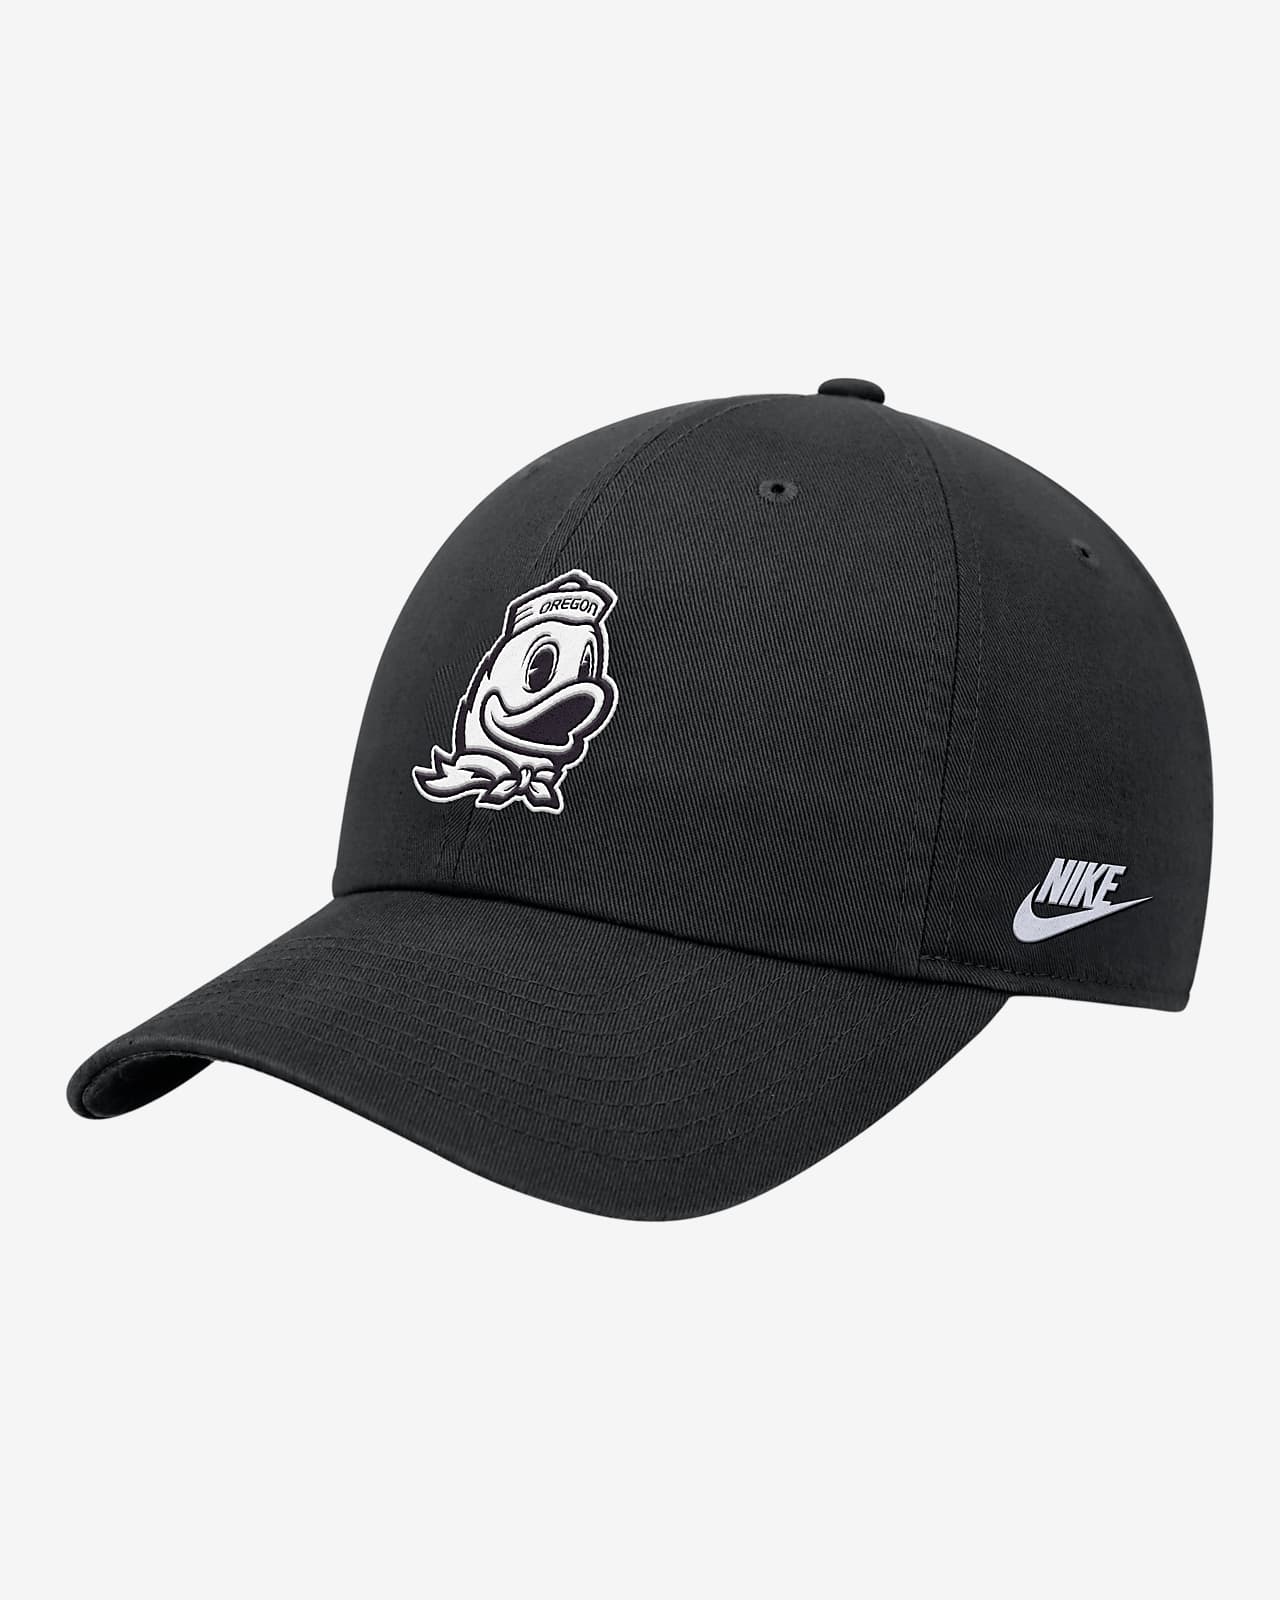 Oregon Nike College Cap